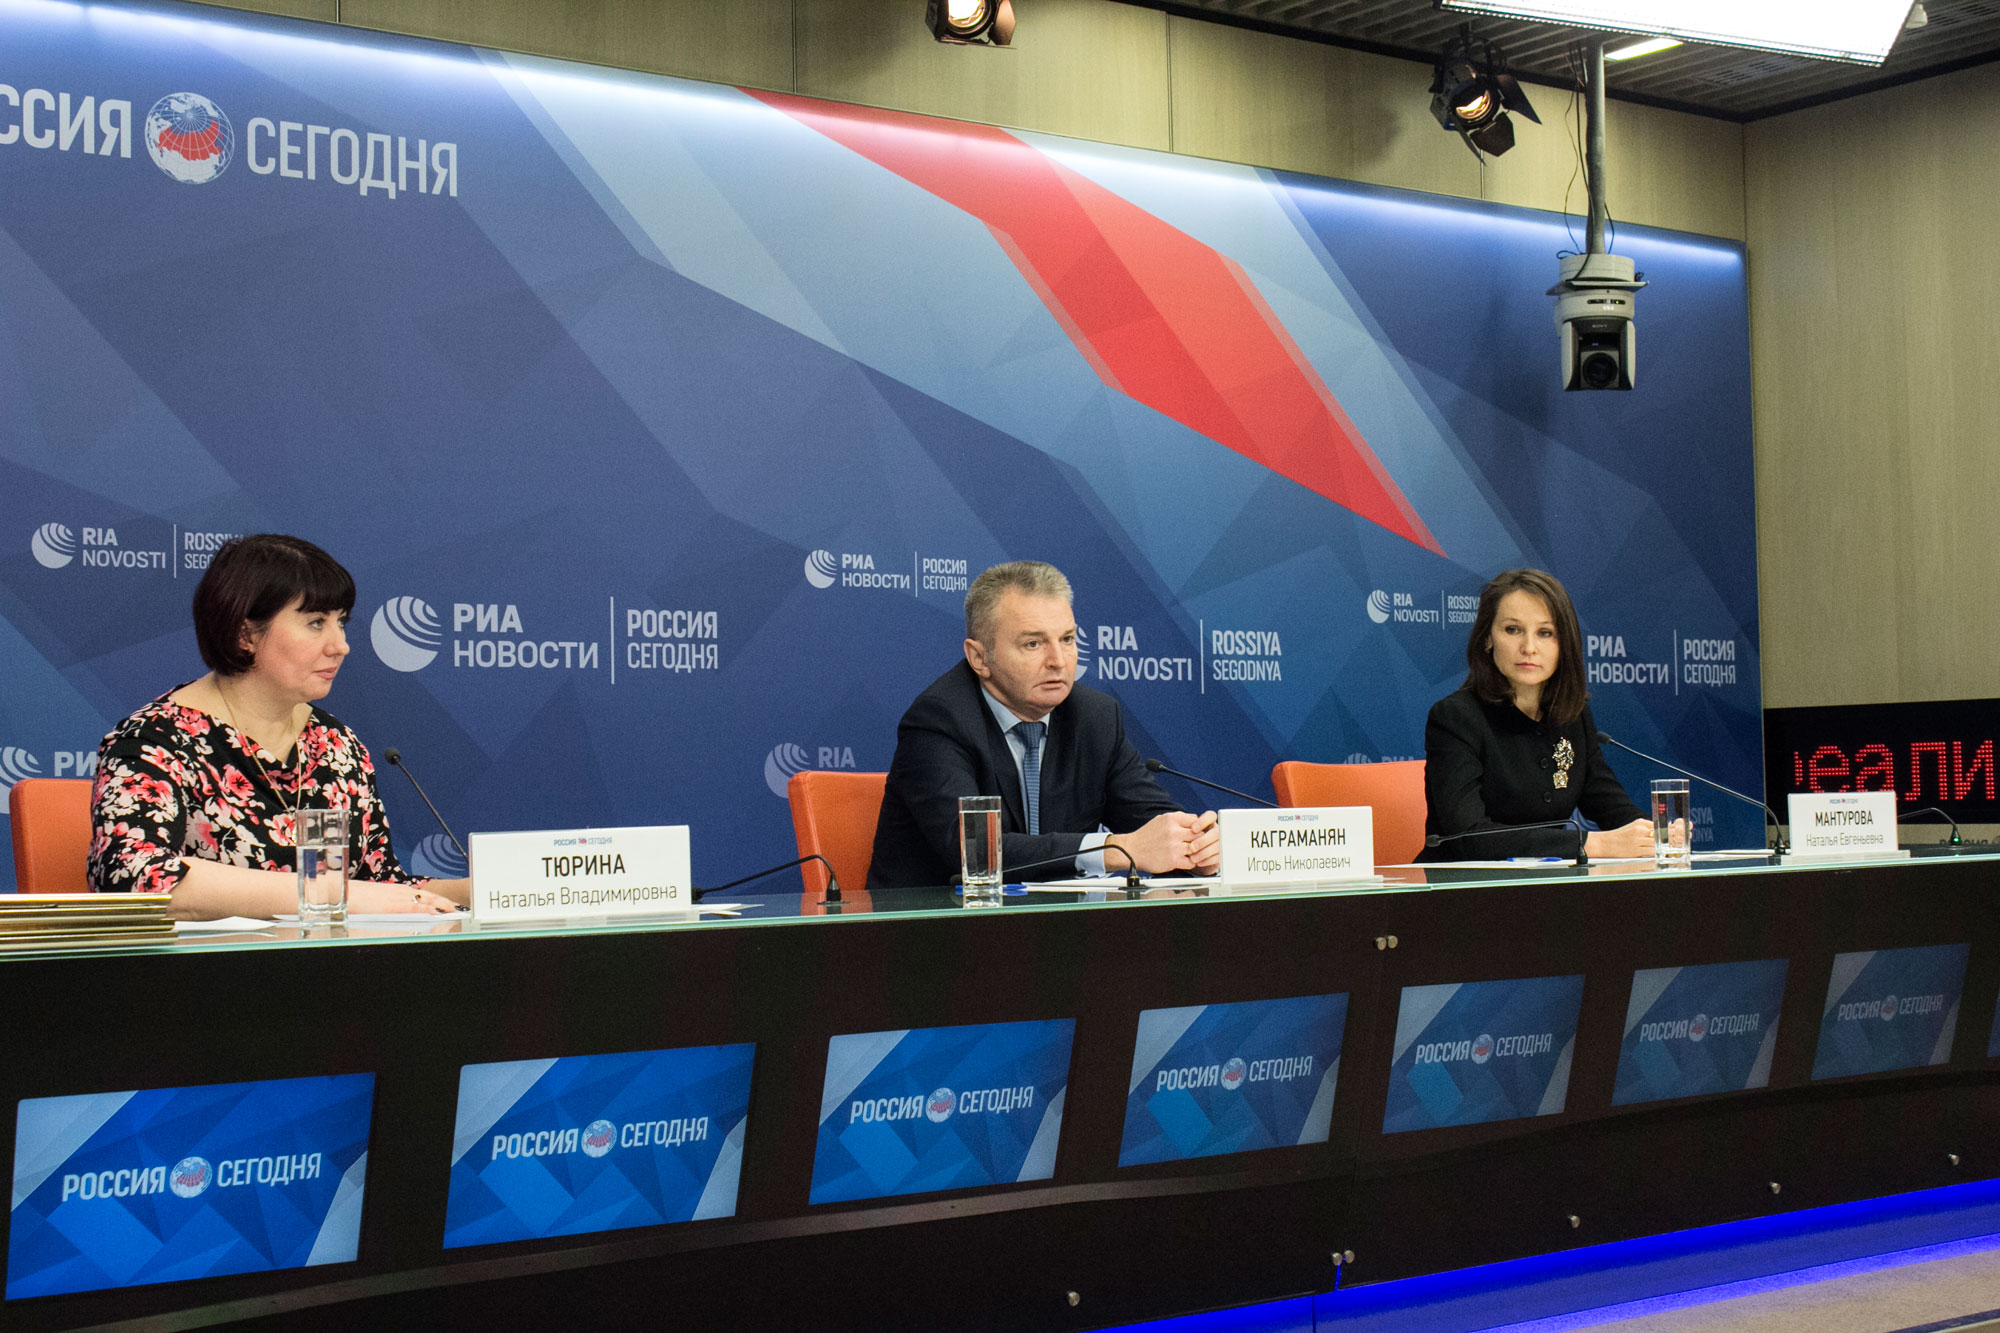 Пресс-конференция проекта «Социальный навигатор» МИА «Россия сегодня»